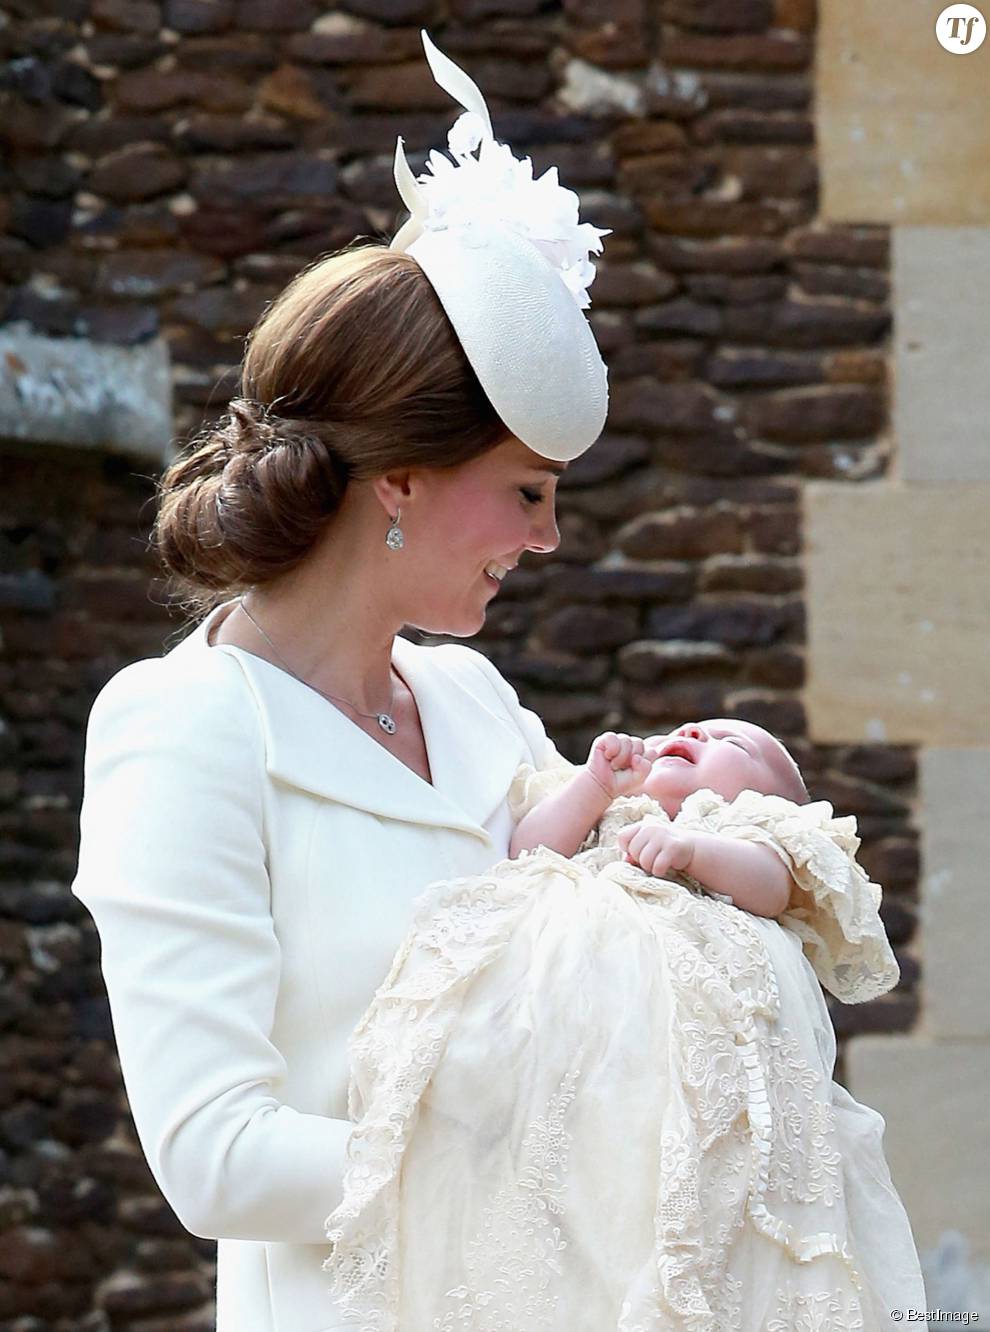 Kate Middleton et sa fille la princesse Charlotte le jour de son baptême le 5 juillet 2015